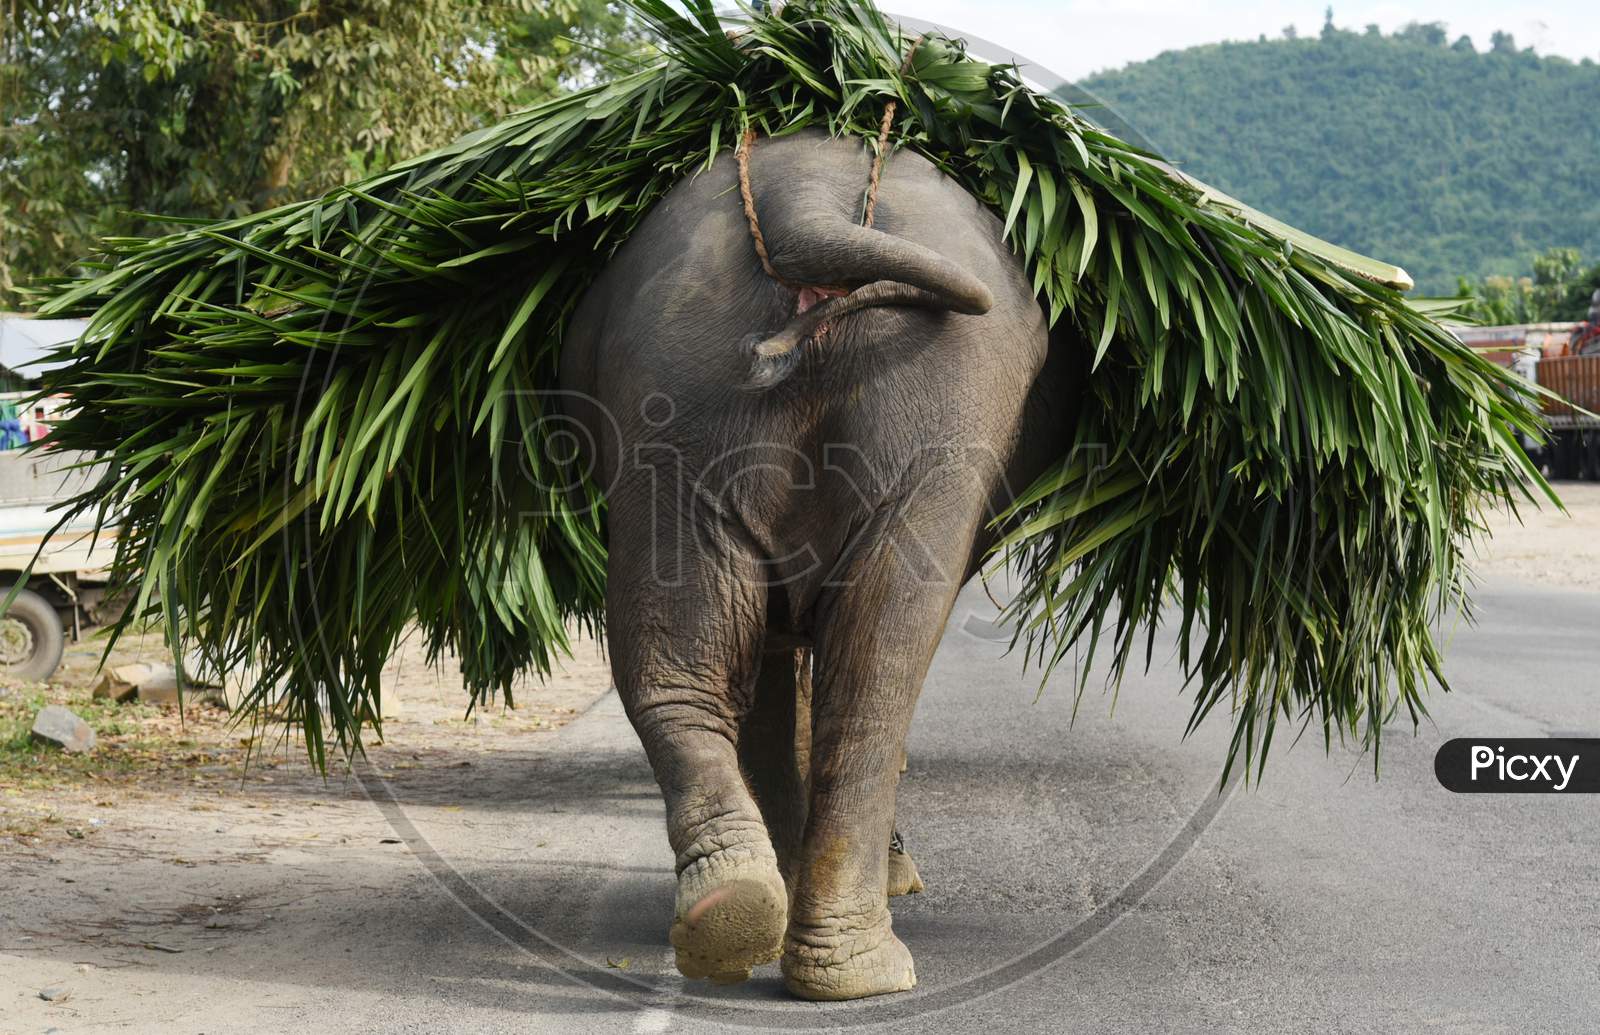 Elephant carry grass